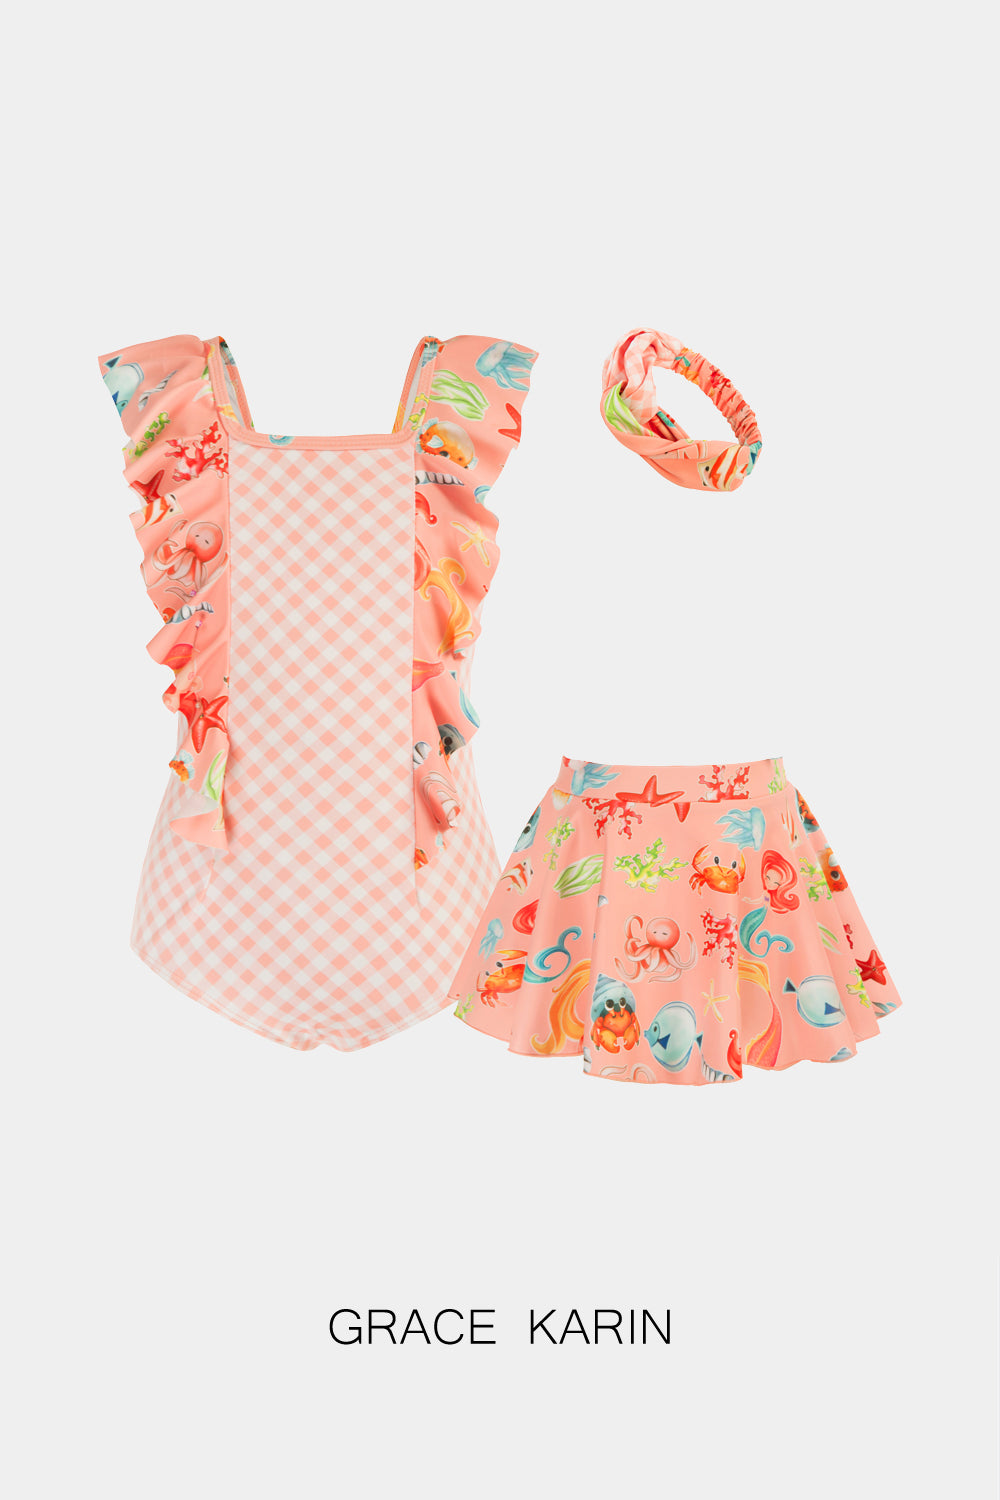 【Solo $9.99】GRACE KARIN Traje de baño floral con volantes para niñas Trajes de baño de una pieza con diadema